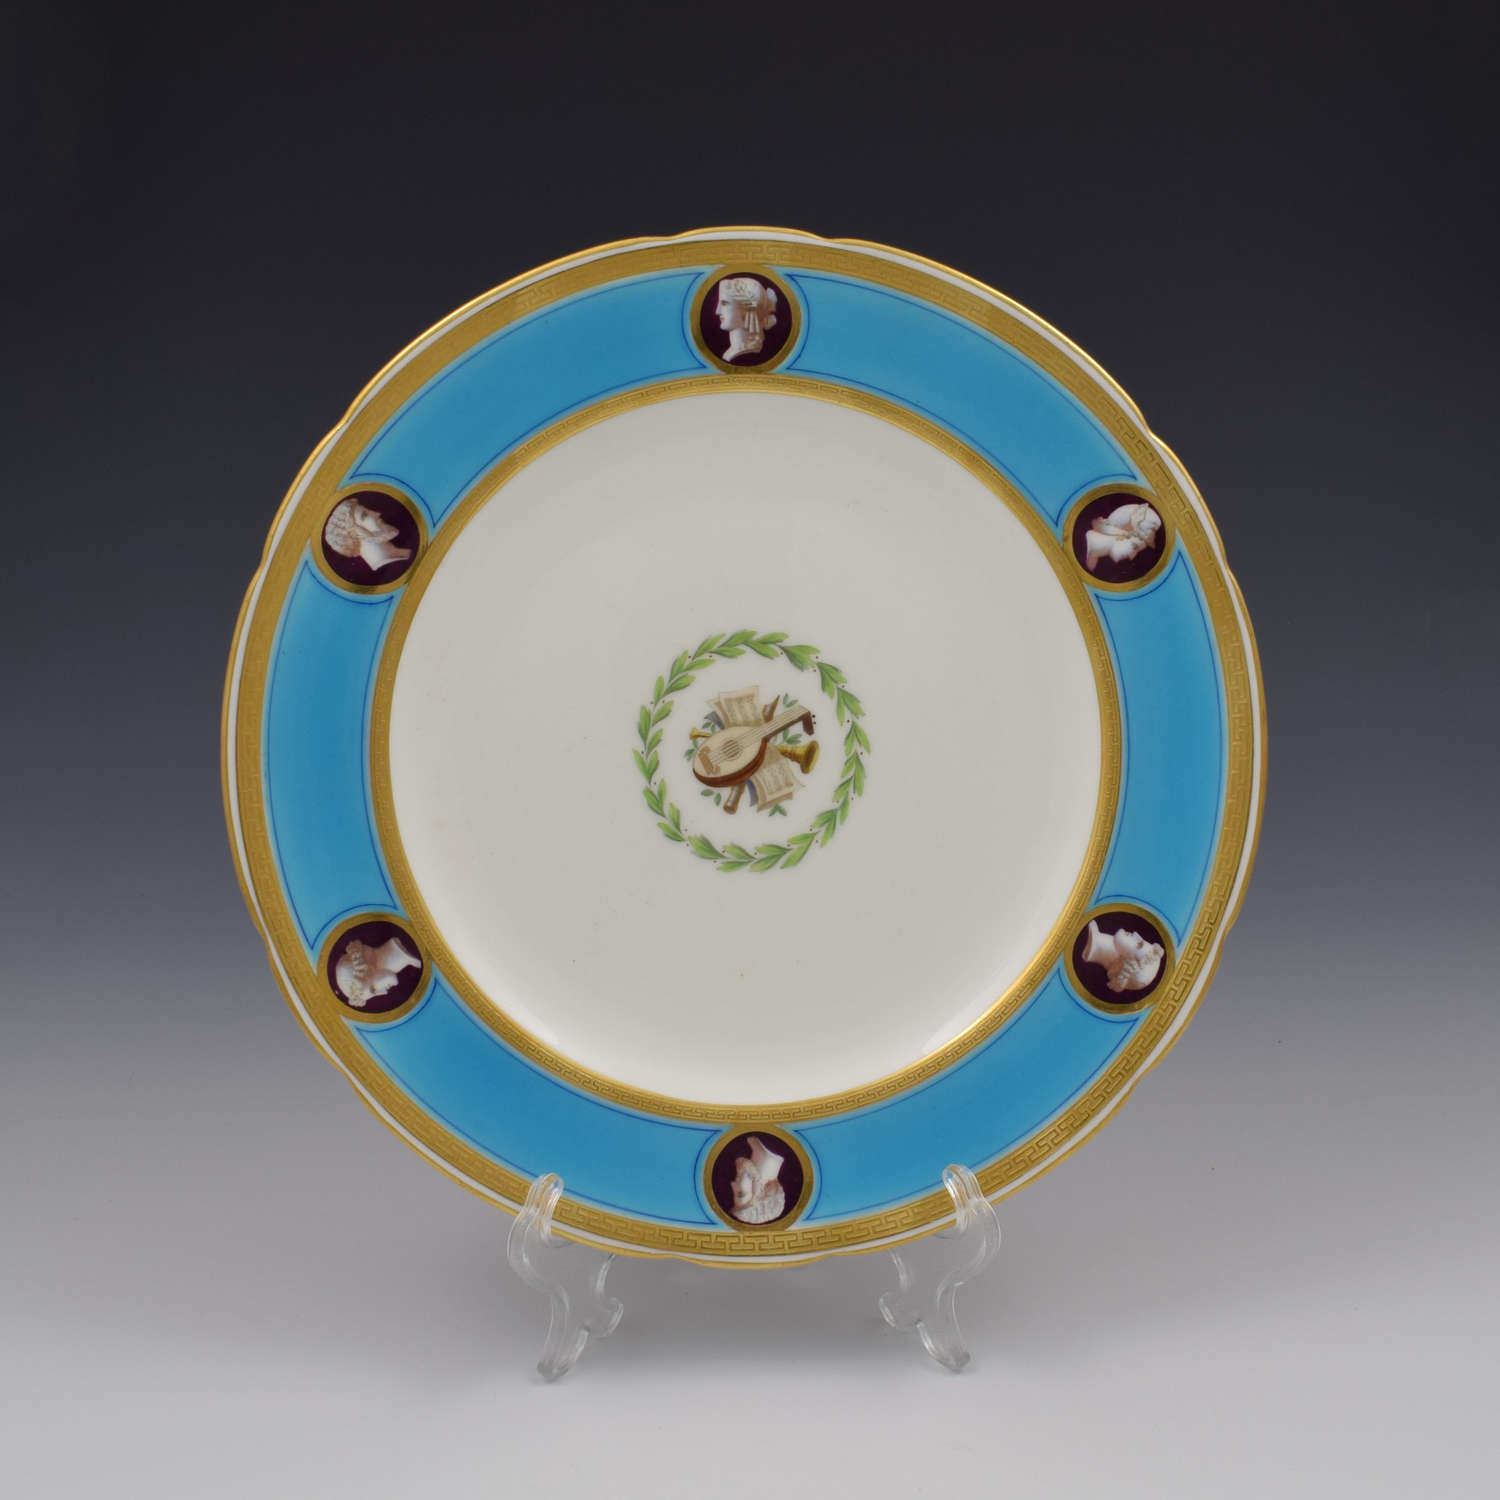 Victorian Minton Porcelain Sevres Style Celeste Bleu Dessert Plate